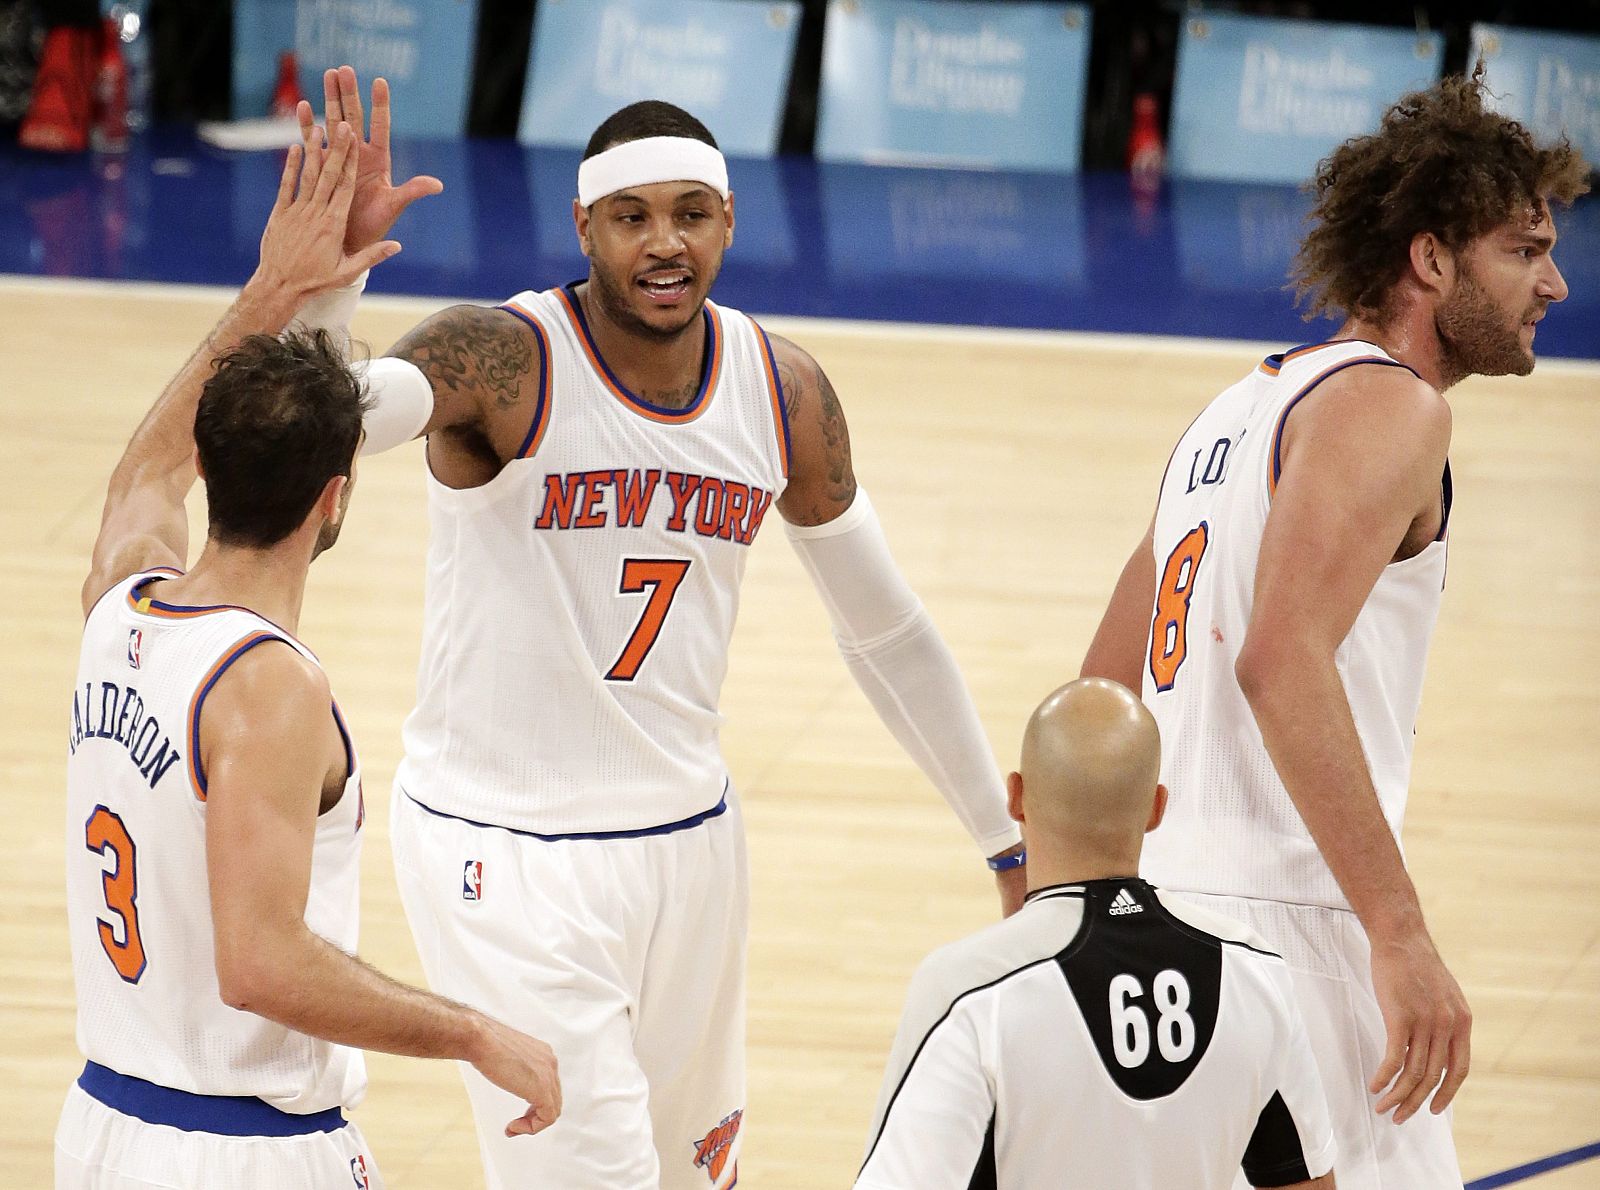 El español de los Knicks. José Manuel Calderón, felicita a Carmelo Anthony durante el partido.